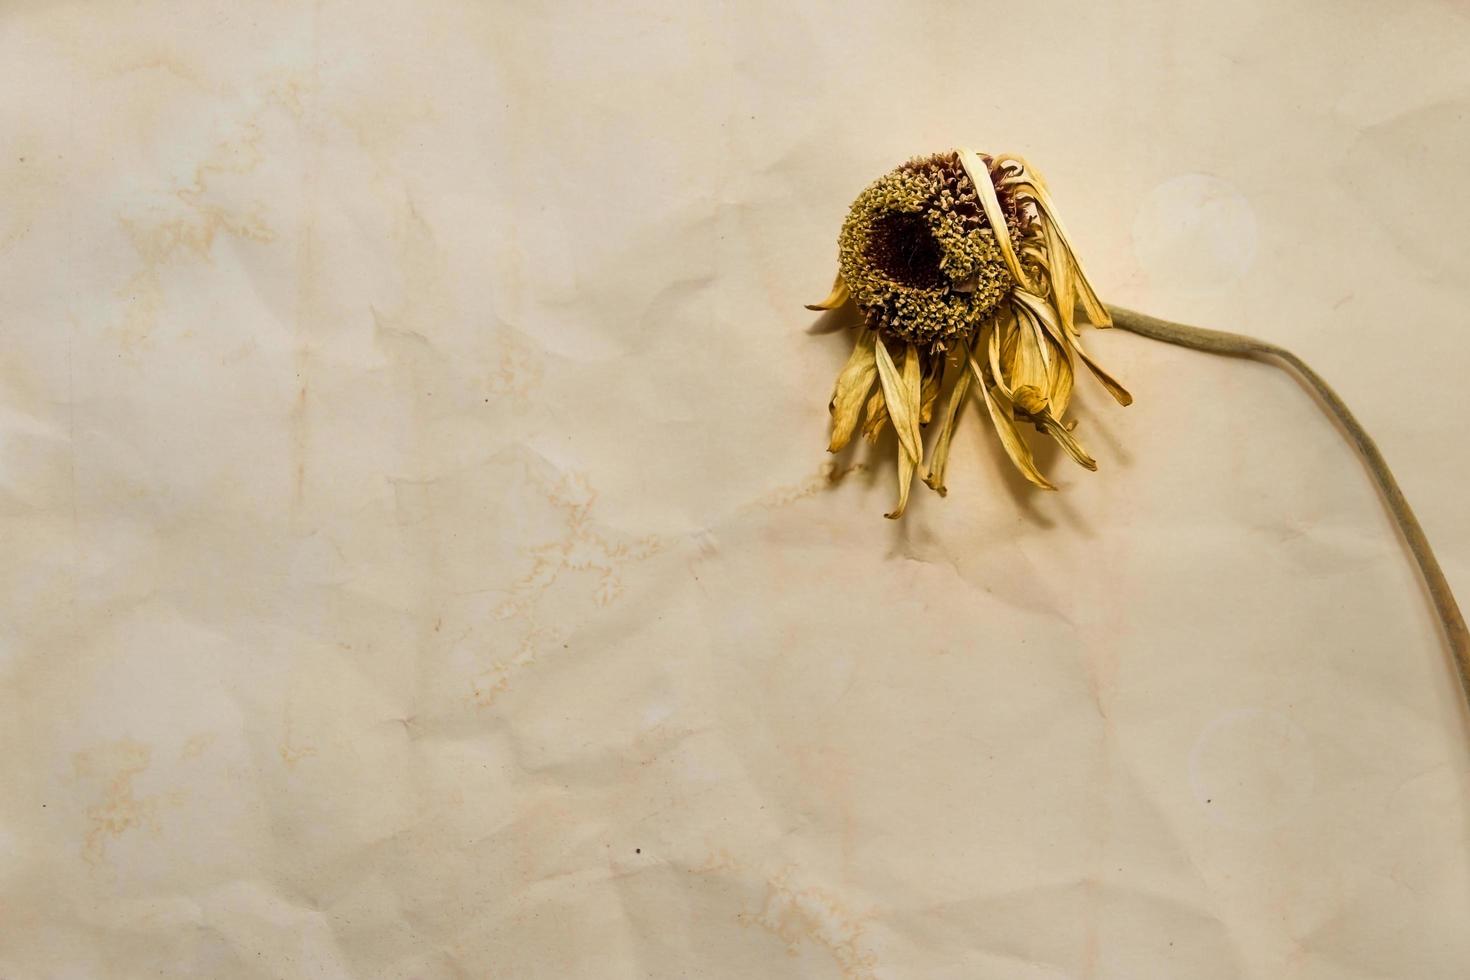 Konzept des Zeitvertreibs mit verwelkten Blumen auf alten Papieren foto